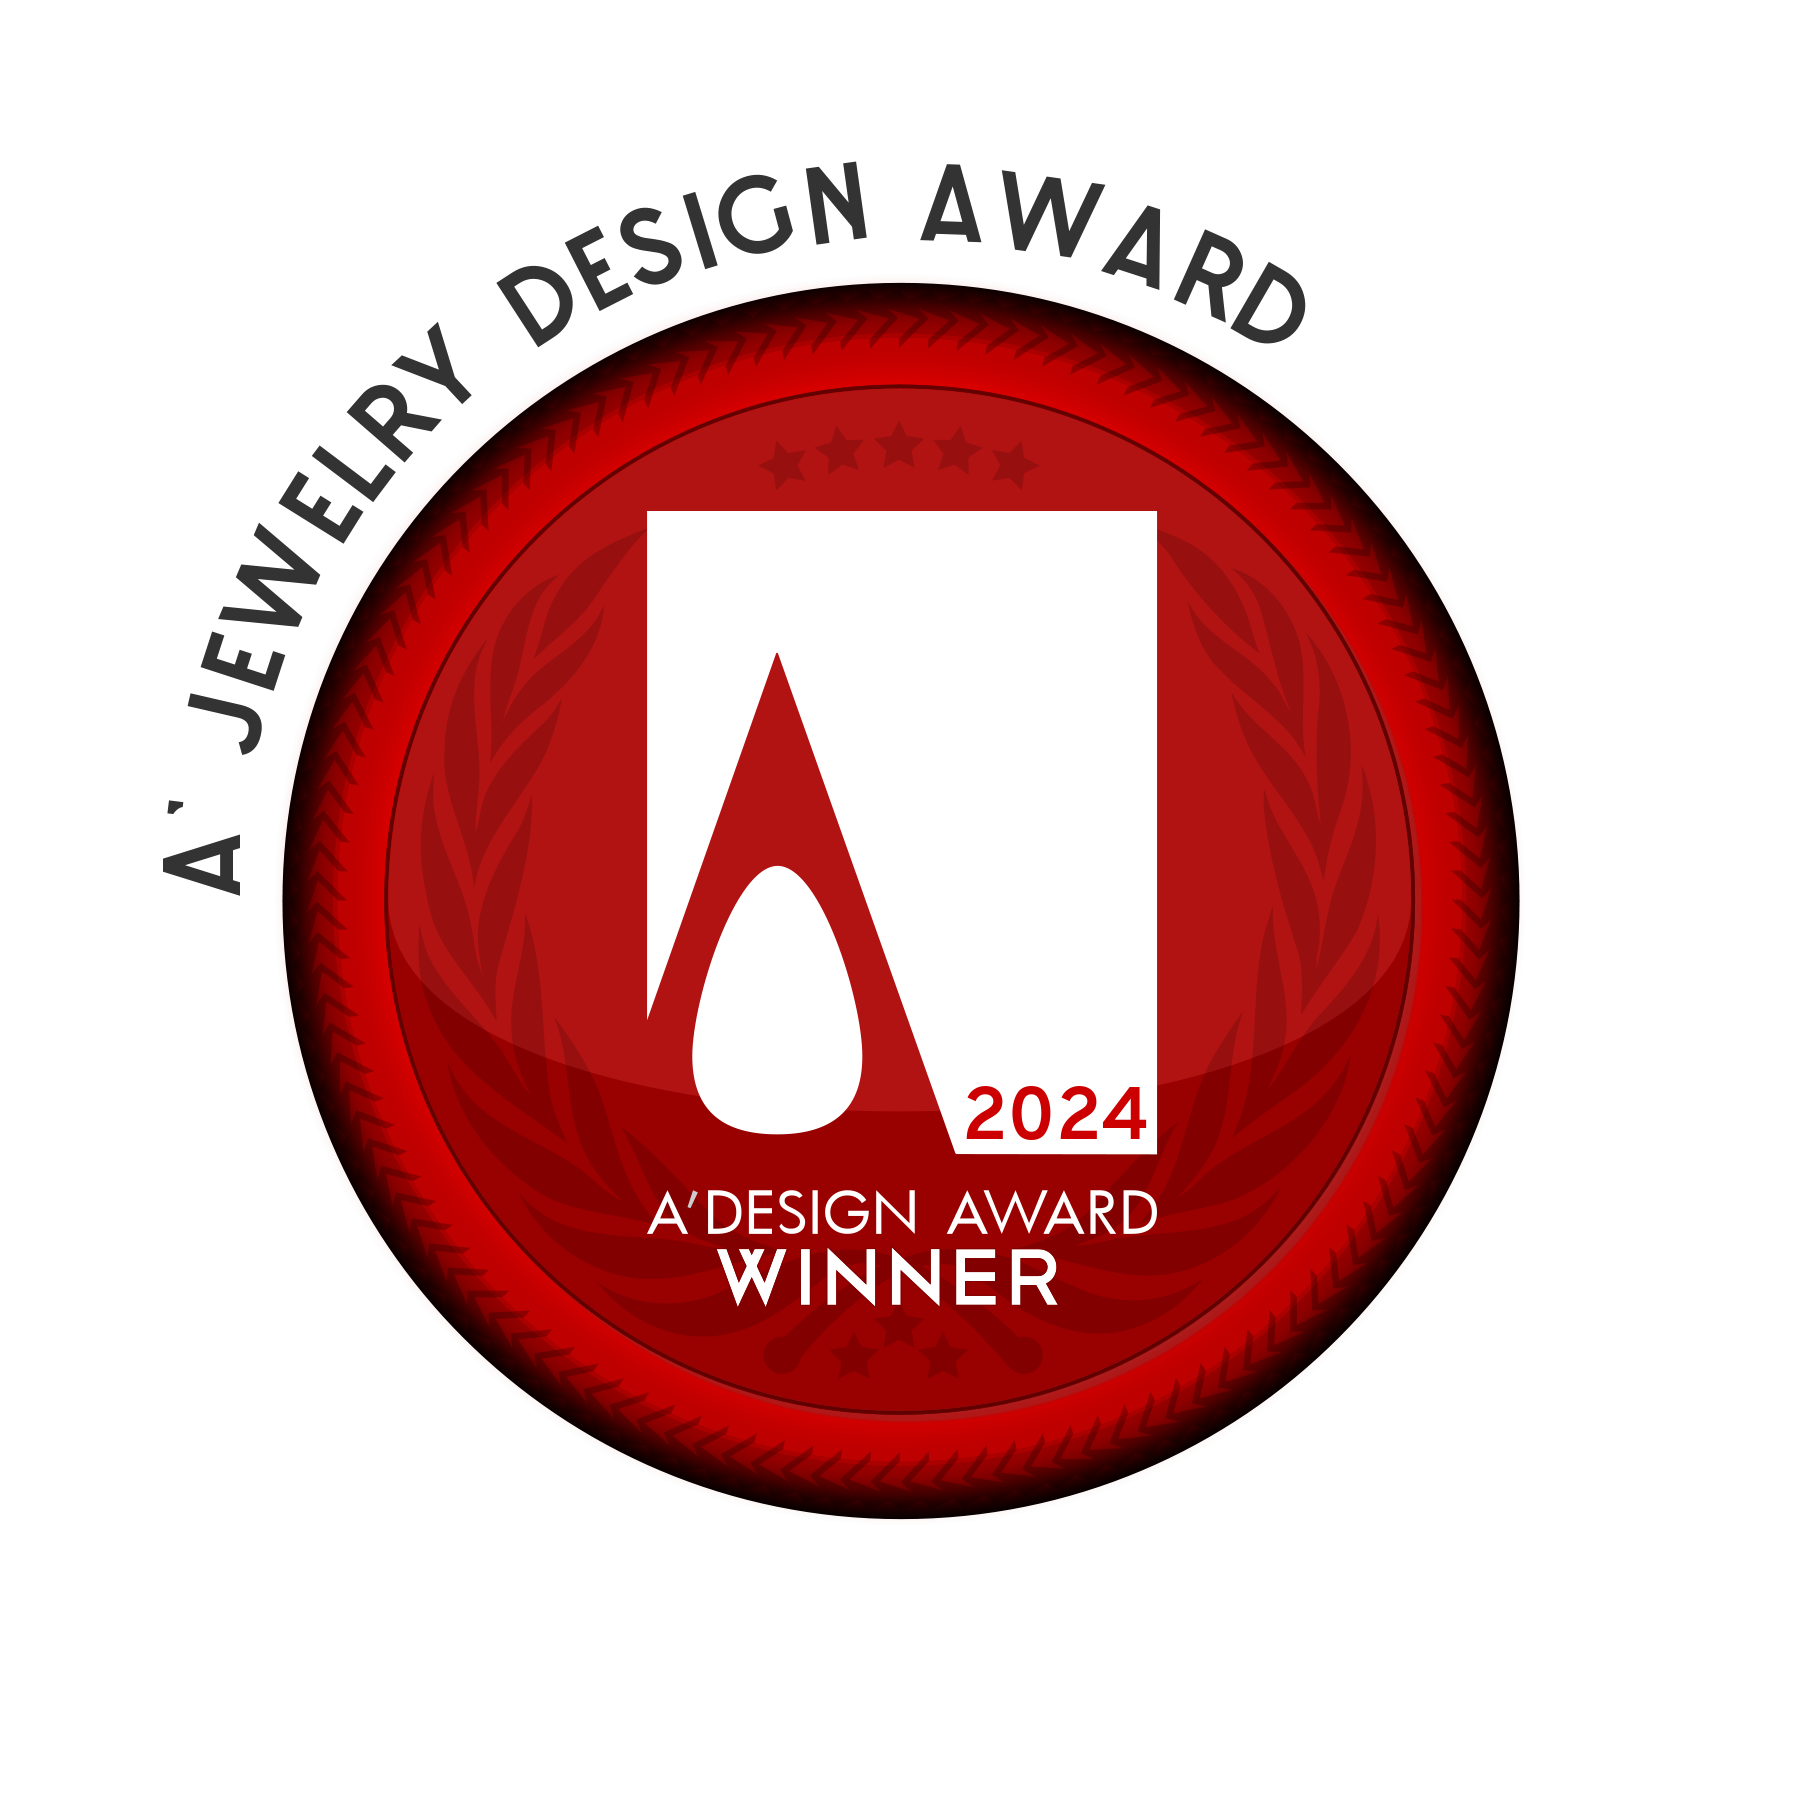 Iron A' Design Award Logo